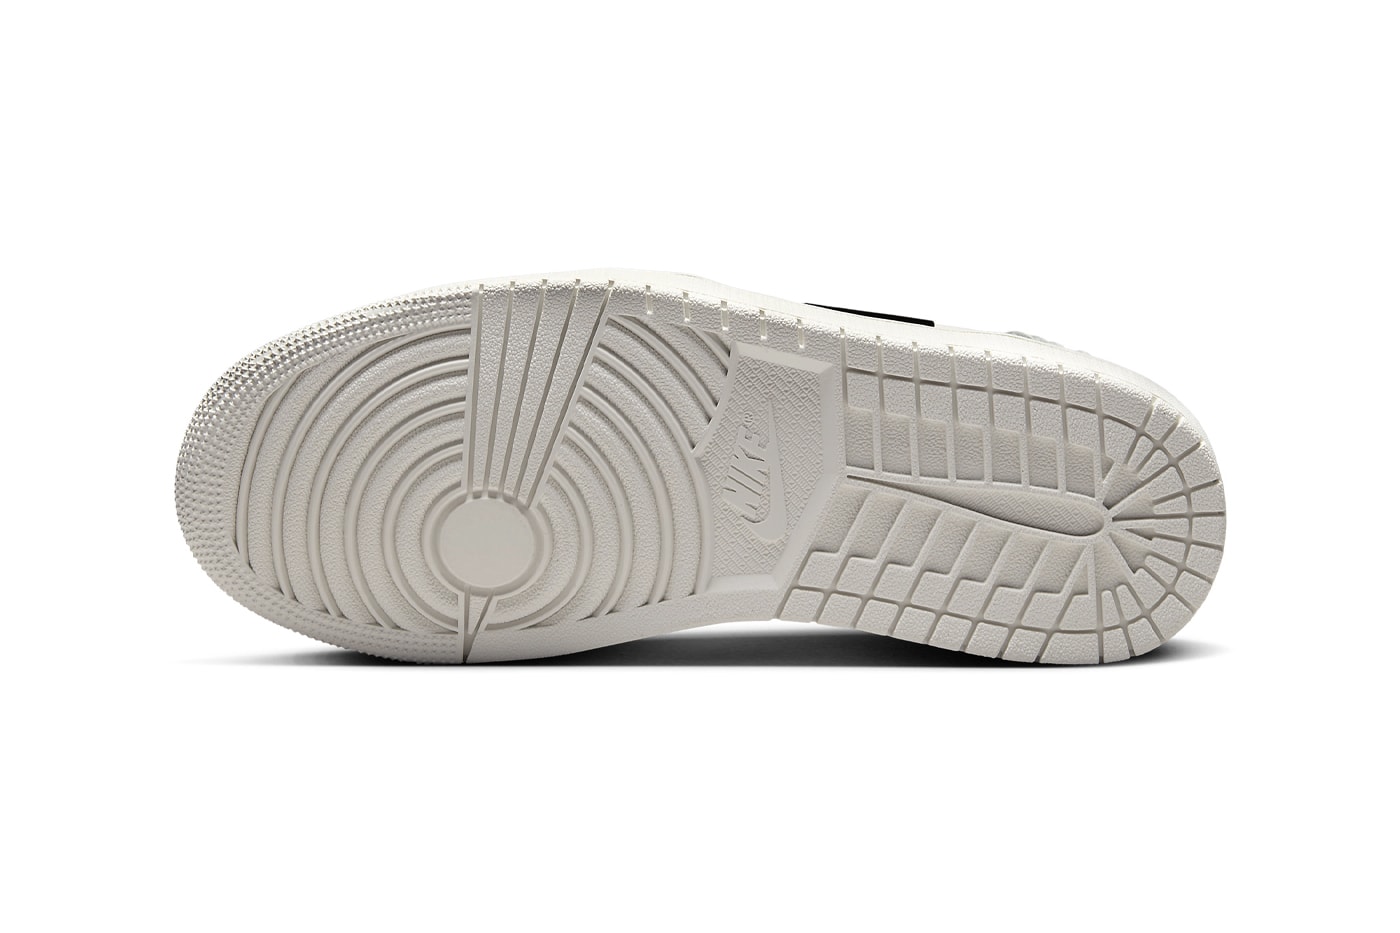 Nike Air Jordan 1 Low Method of Make "White/Metallic Gold" Release Info